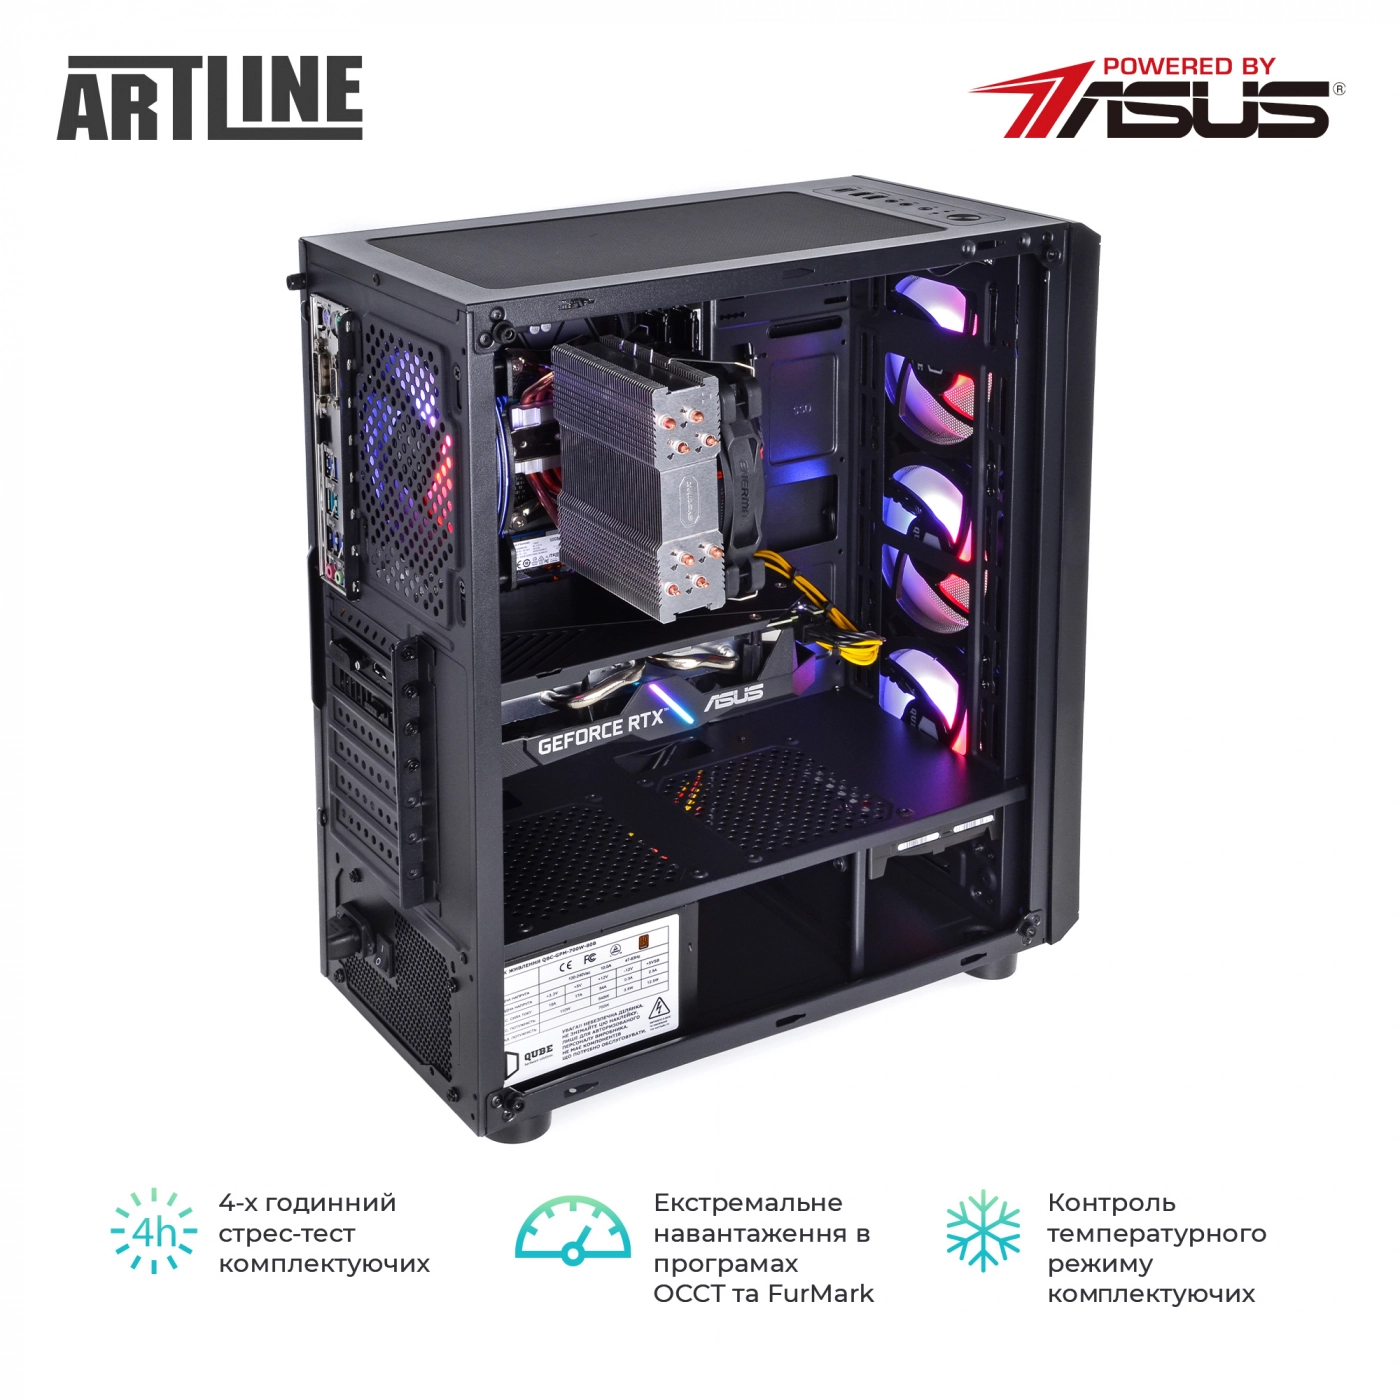 Купить Компьютер ARTLINE Gaming X56v19 - фото 8